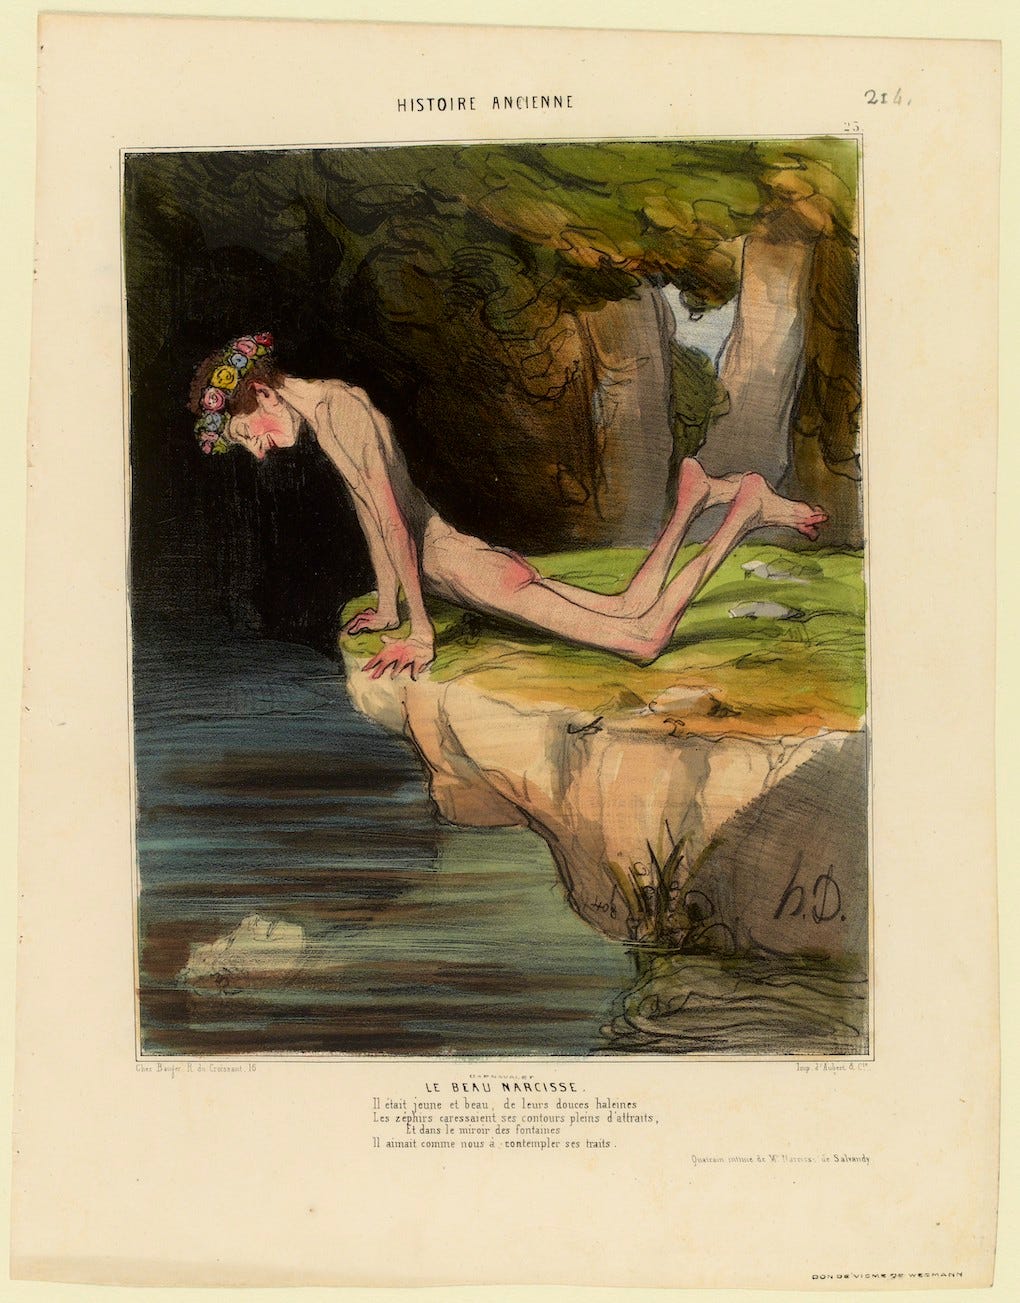 Le beau Narcisse se mirant dans l’eau, lithographie de Honoré Daumier.